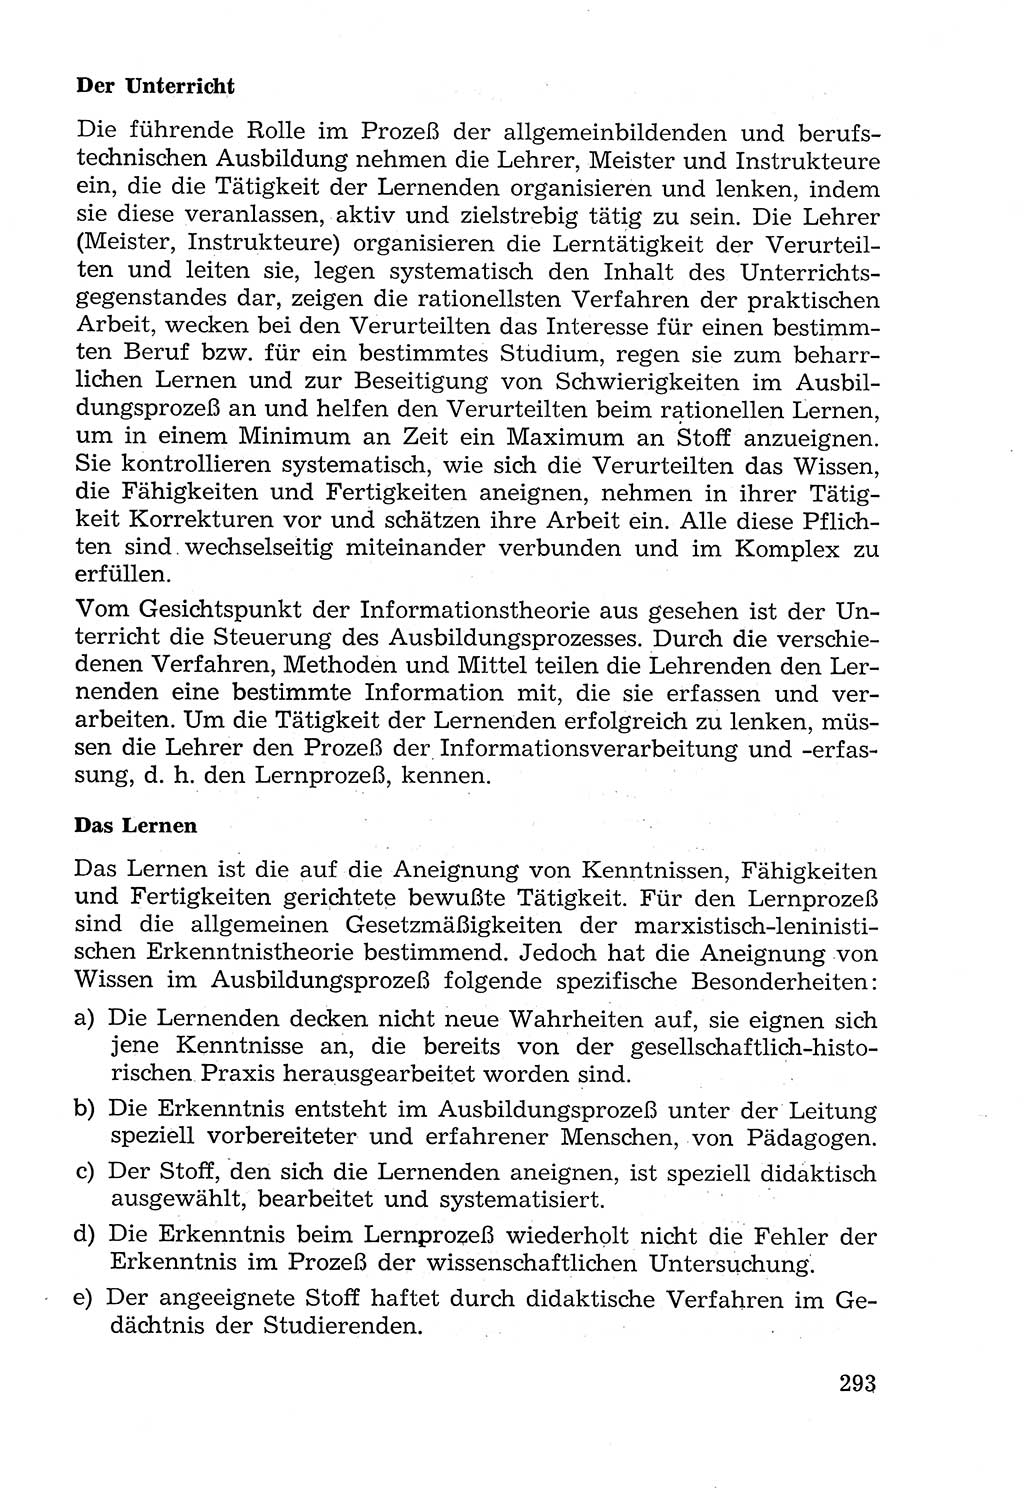 Lehrbuch der Strafvollzugspädagogik [Deutsche Demokratische Republik (DDR)] 1969, Seite 293 (Lb. SV-Pd. DDR 1969, S. 293)